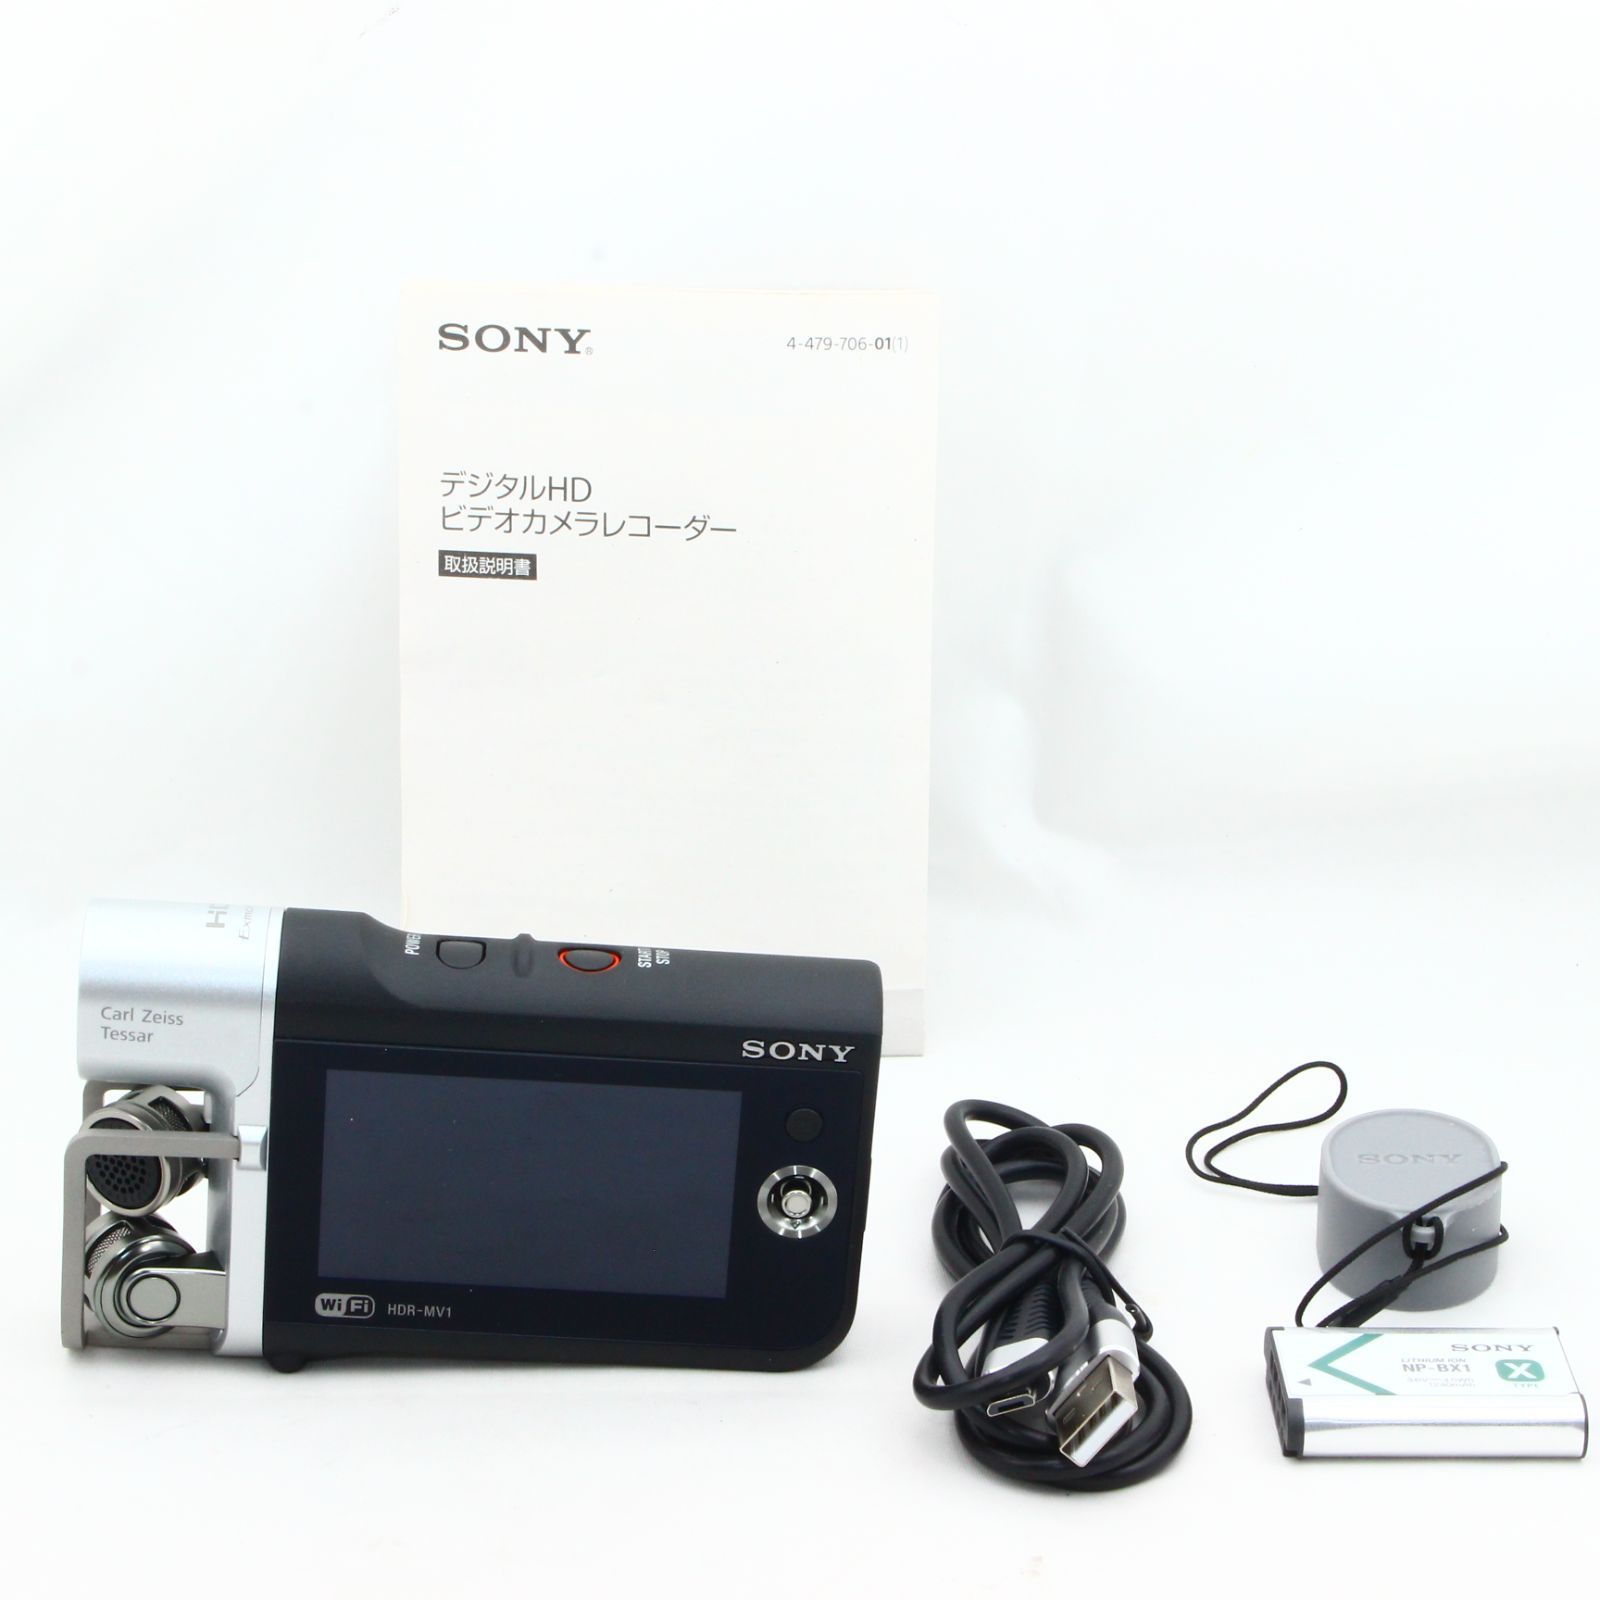 ソニー SONY ビデオカメラ HDR-MV1 高音質 ブラック - カメラ